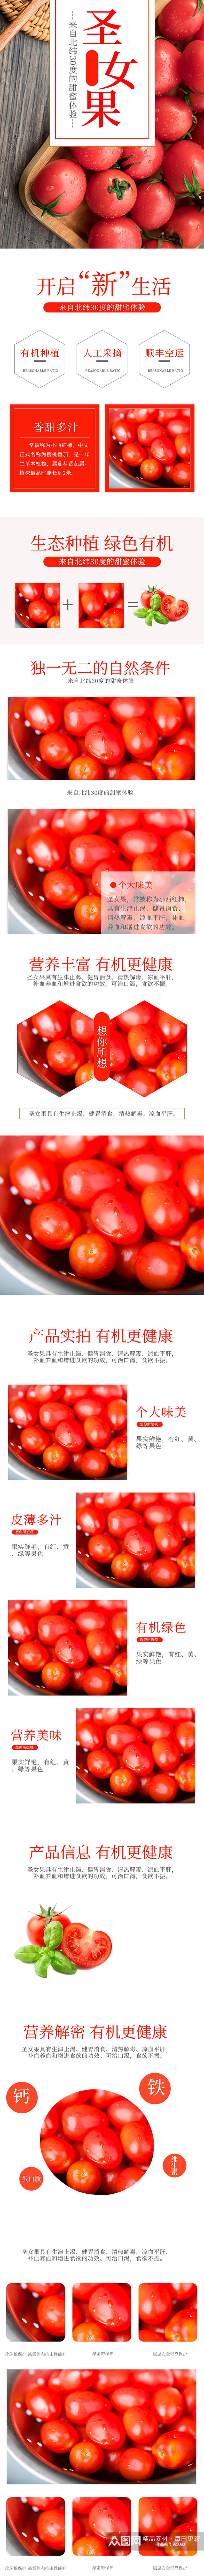 淘宝水果生鲜圣女果番茄食品蔬菜详情页素材